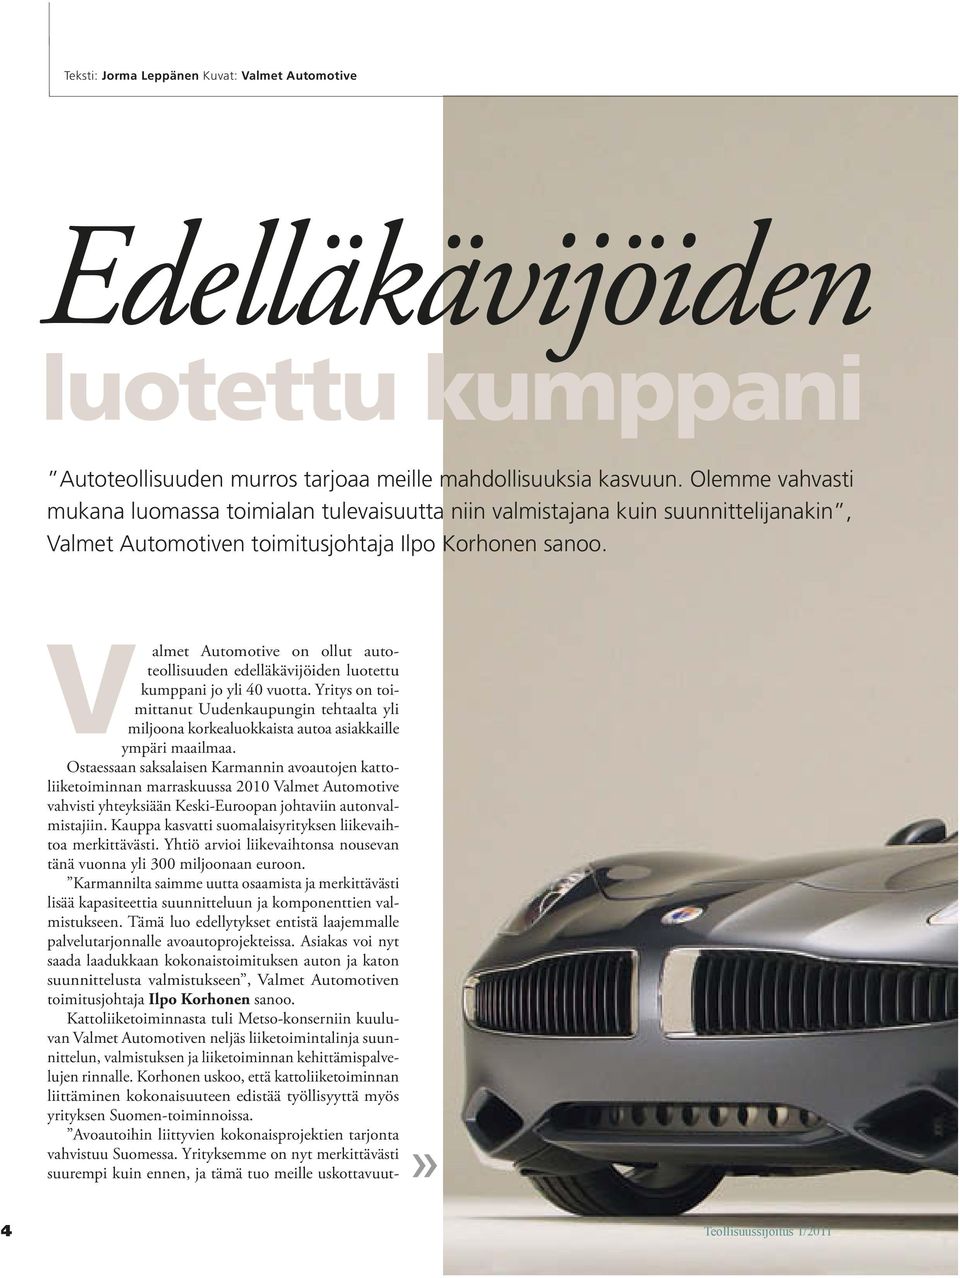 Valmet Automotive on ollut autoteollisuuden edelläkävijöiden luotettu kumppani jo yli 40 vuotta.